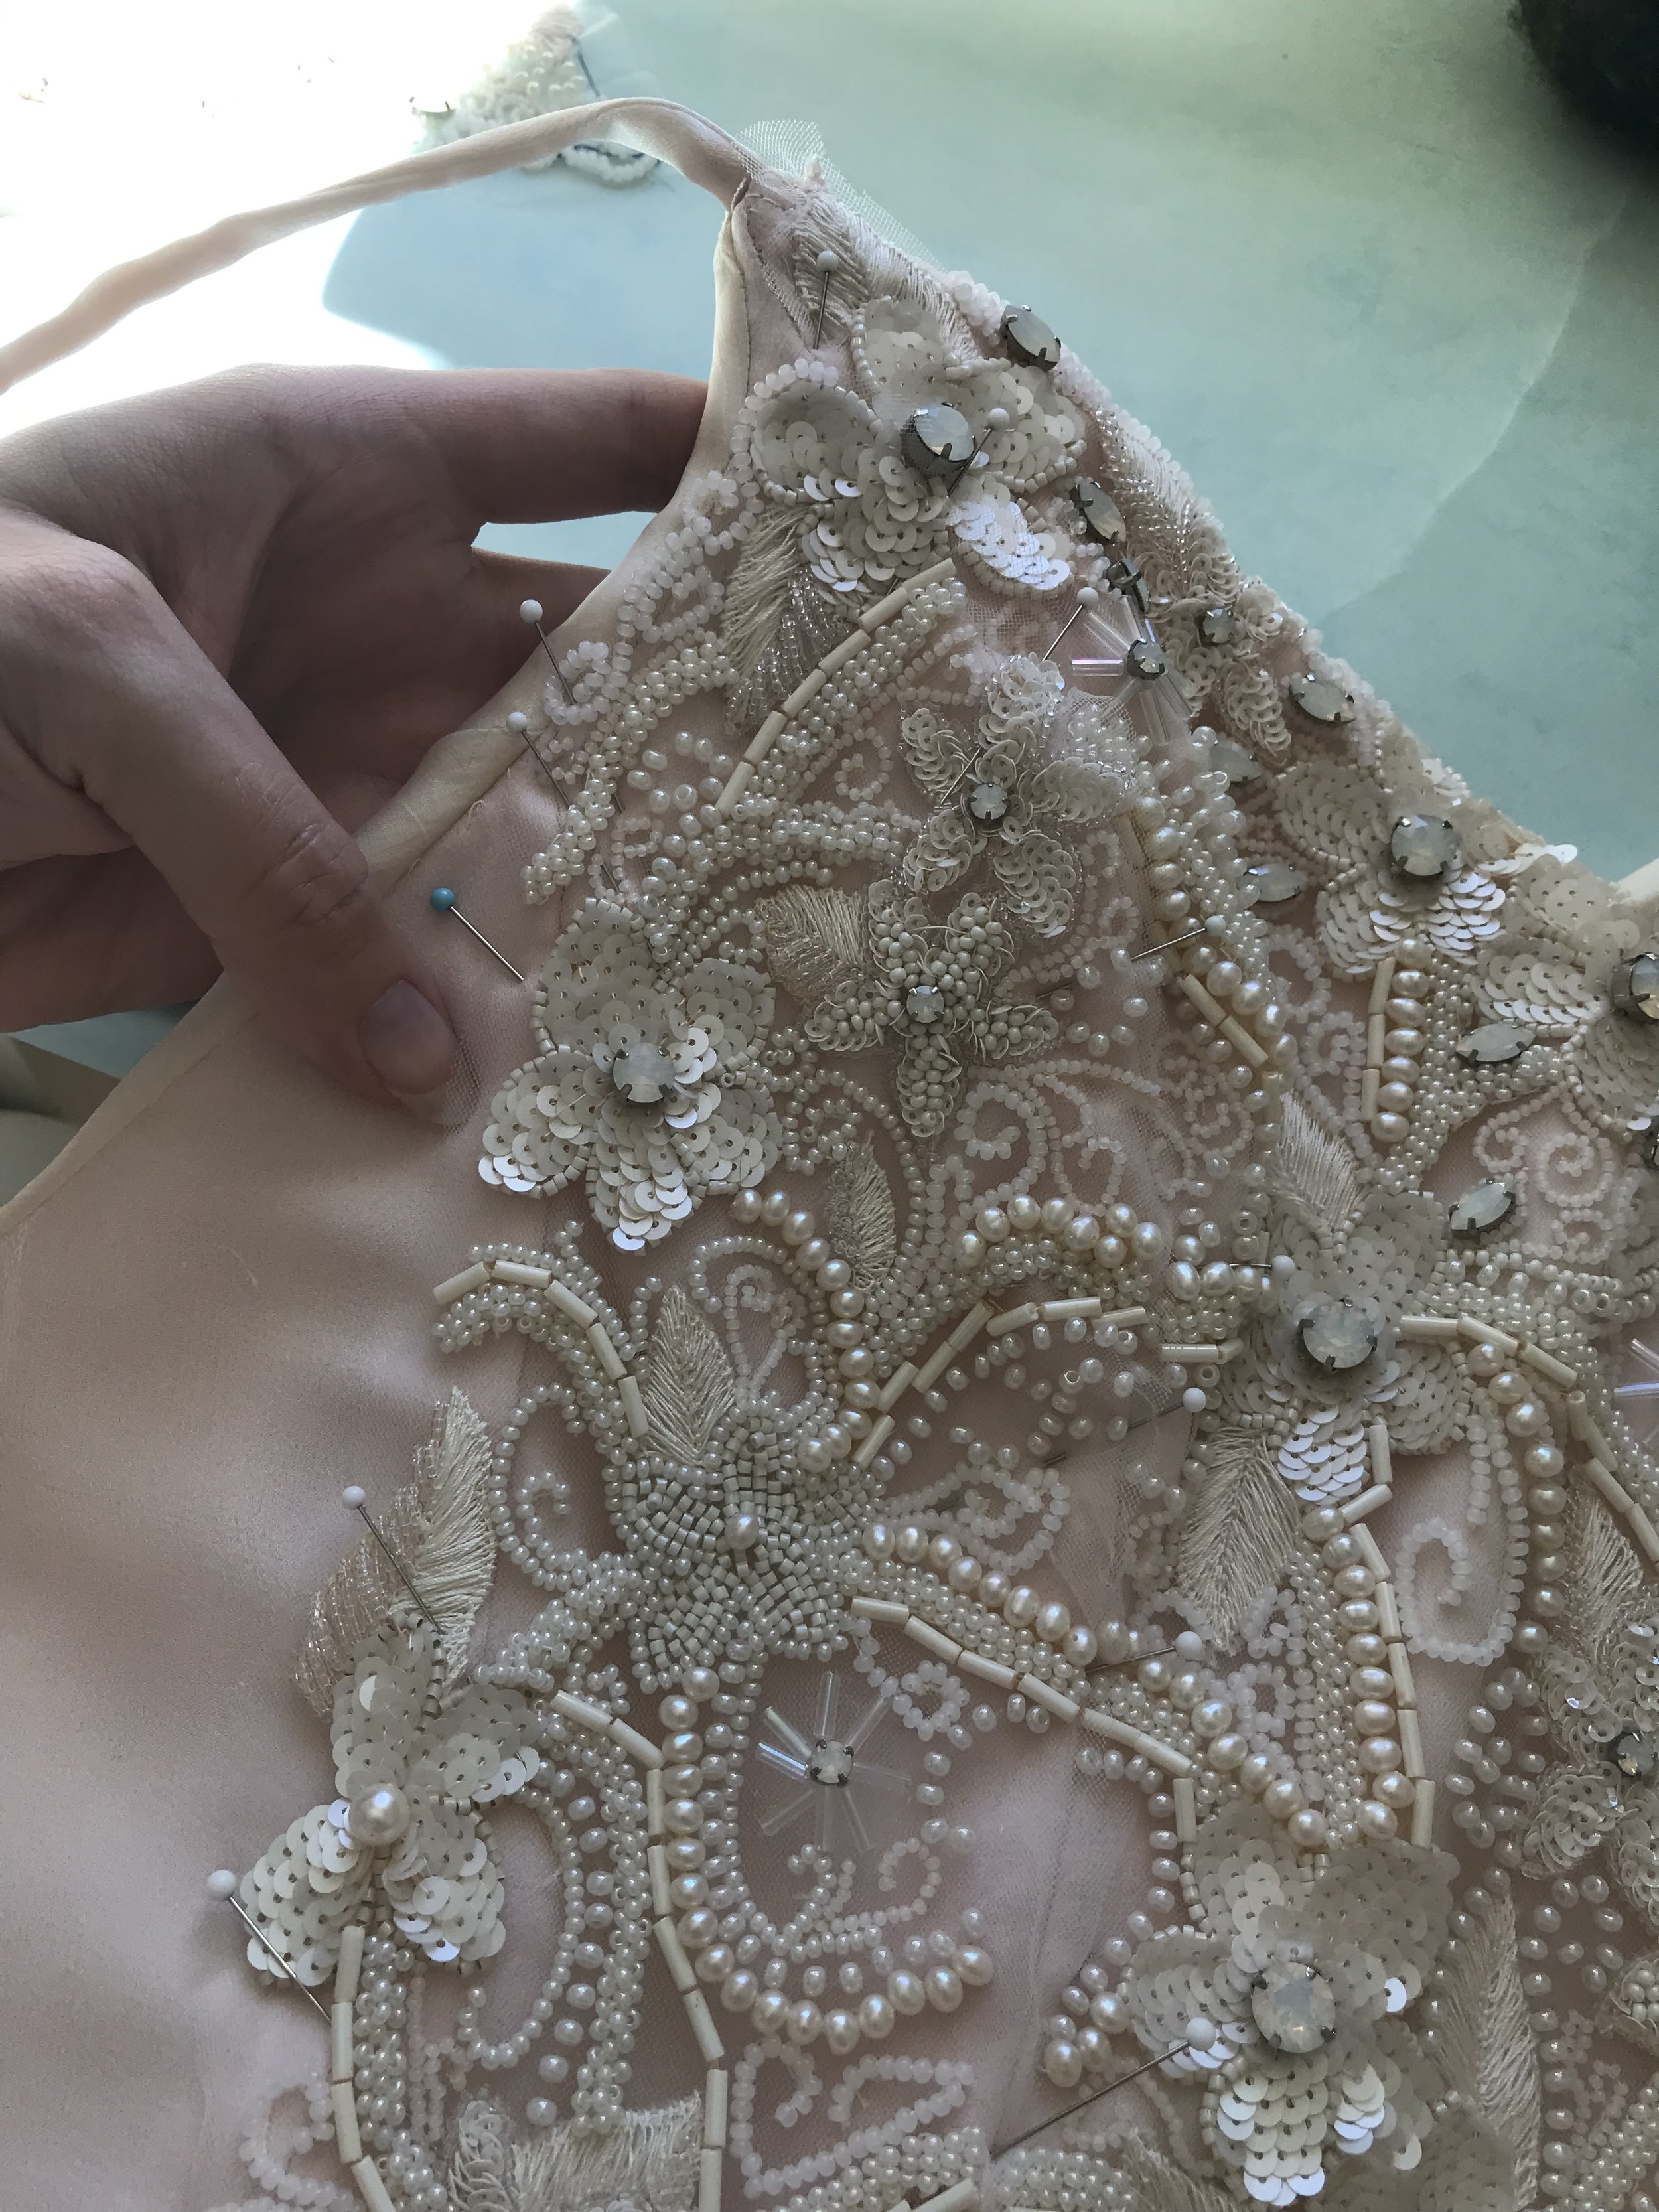 Handmade Wedding Dress Chapter 11: Skirt Construction and Dress